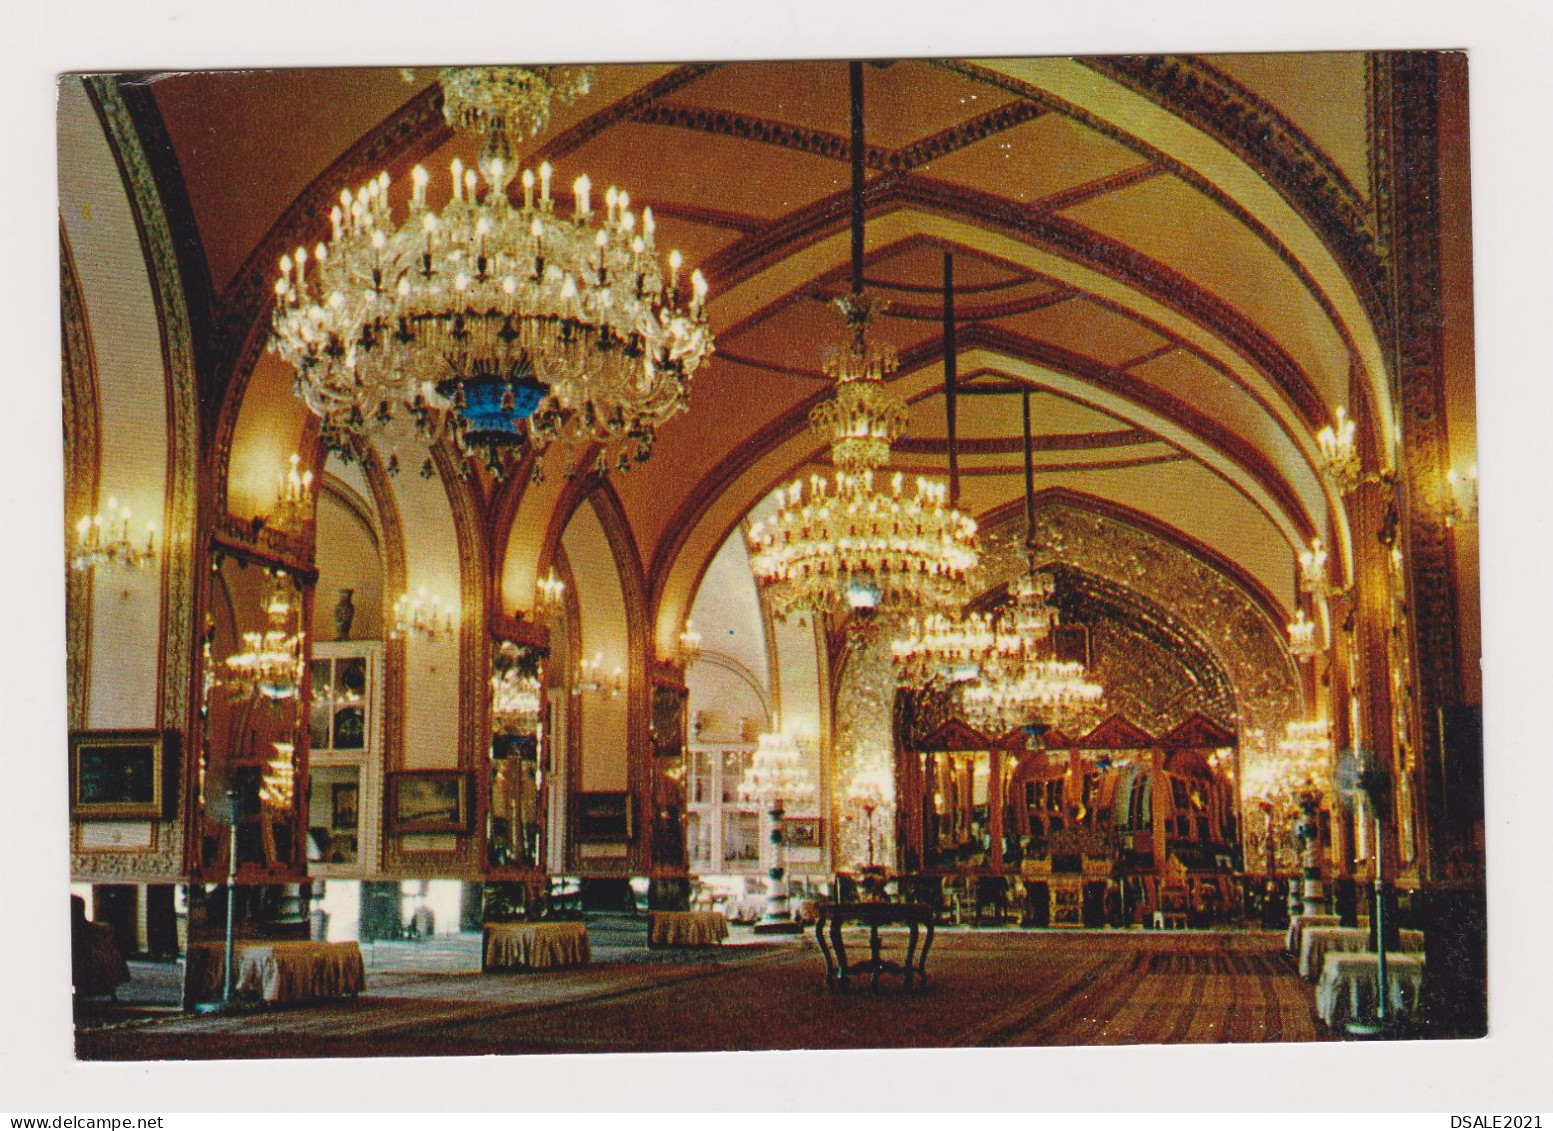 IRAN Tehran Kakh-Golestan, Golestan Palace Saloon, View Vintage Photo Postcard RPPc (67458) - Iran